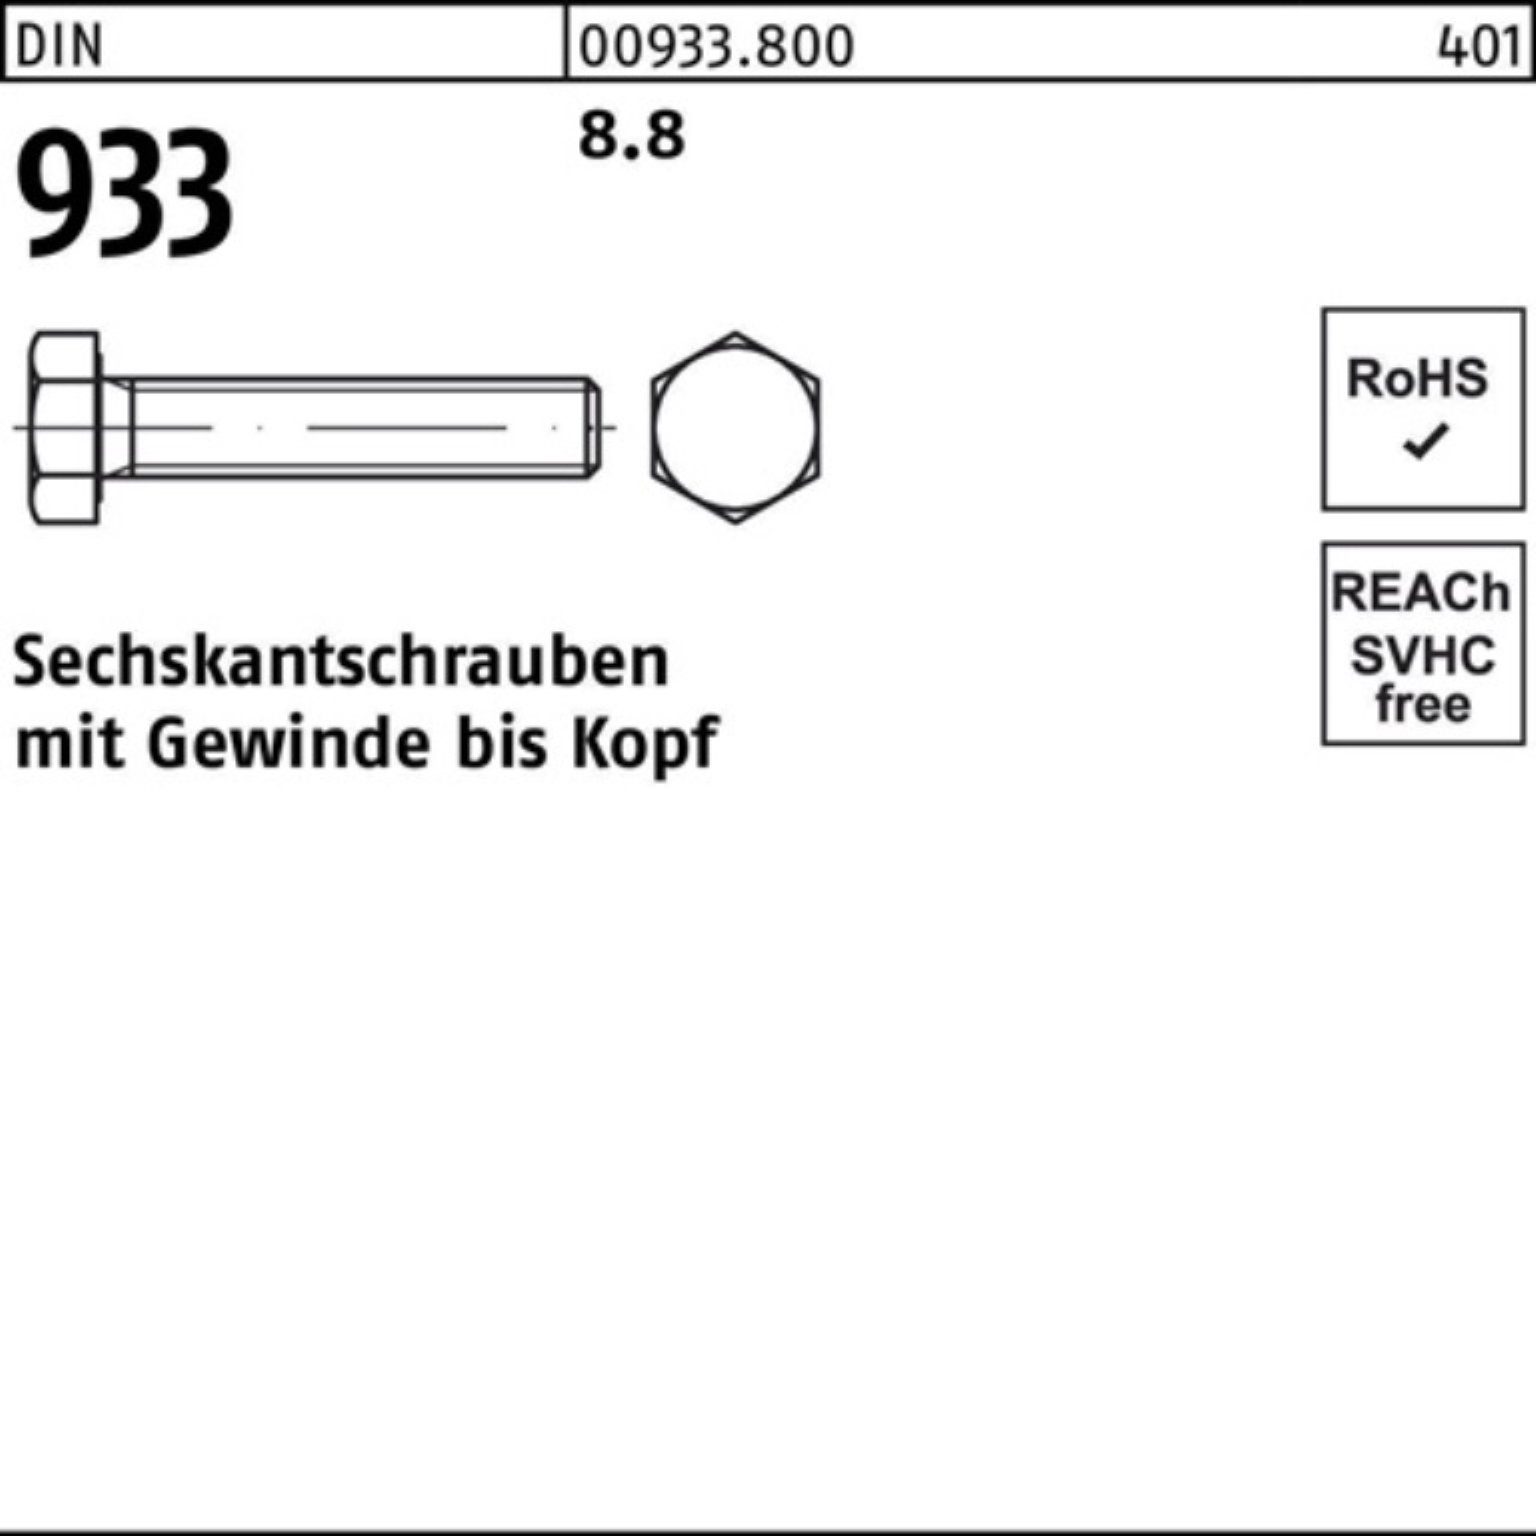 VG DIN M22x 100er 933 200 1 Stück 8.8 DIN Pack Reyher Sechskantschraube Sechskantschraube 933